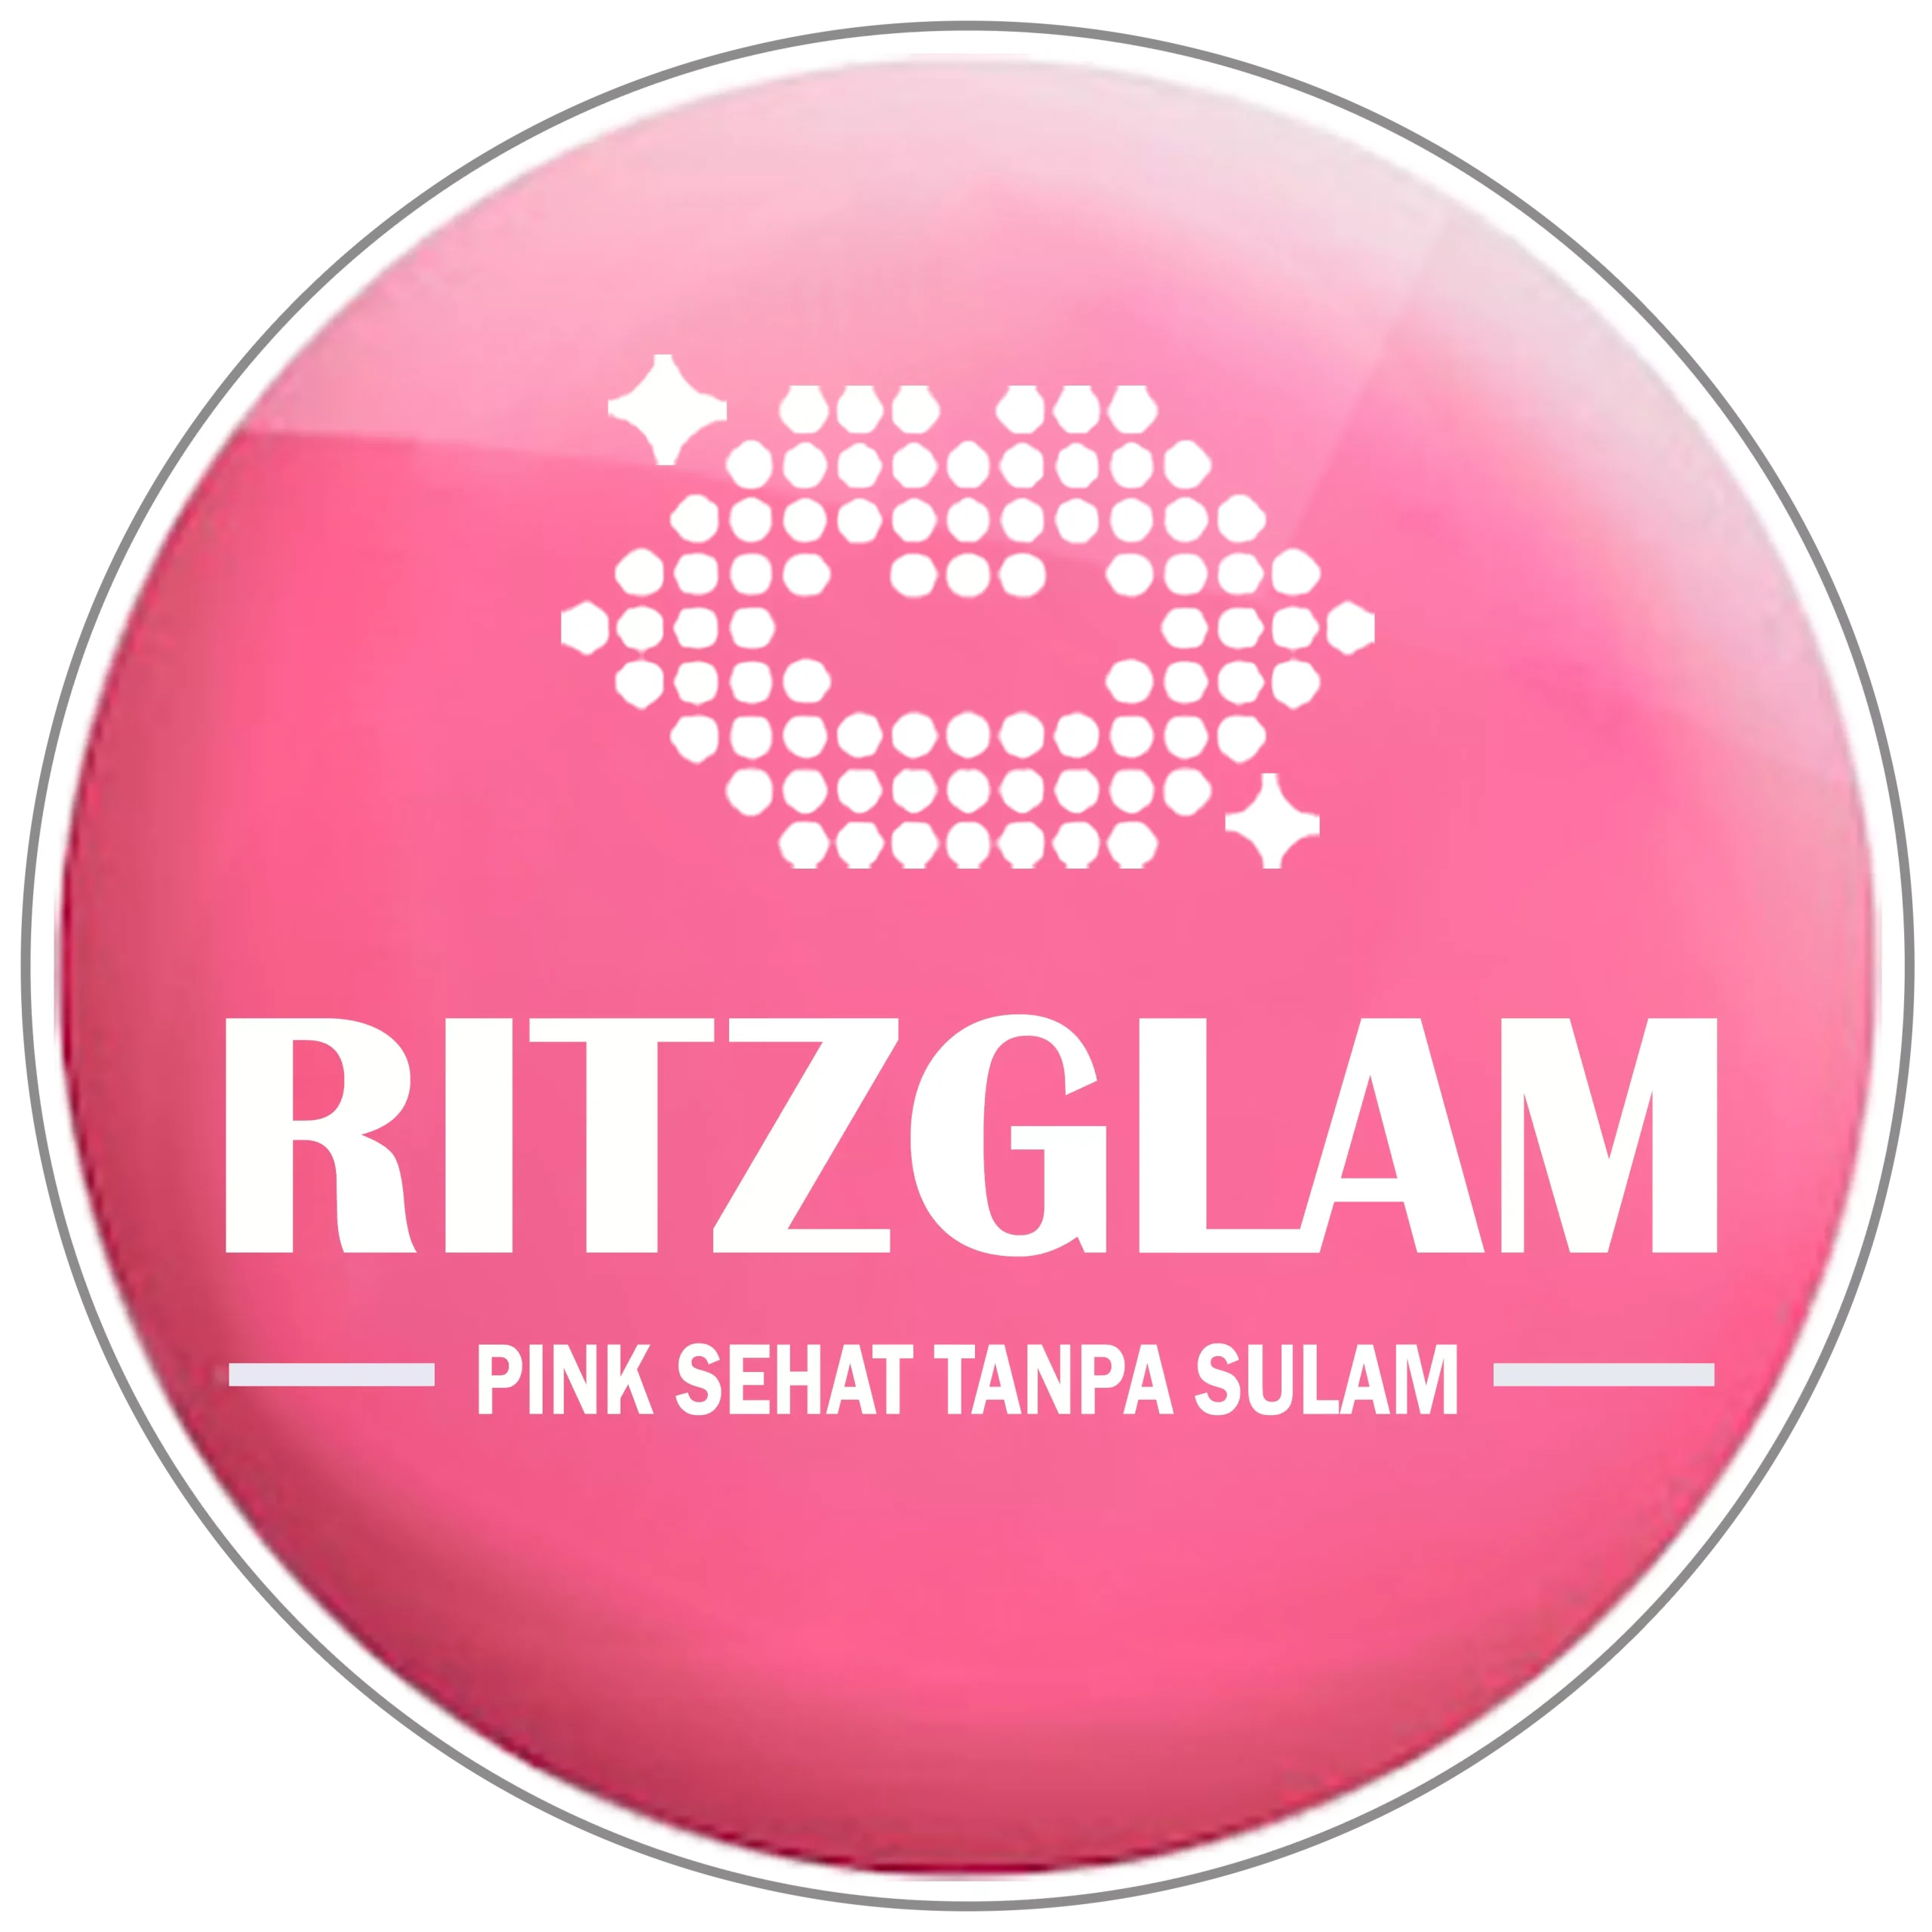 Ritzglam